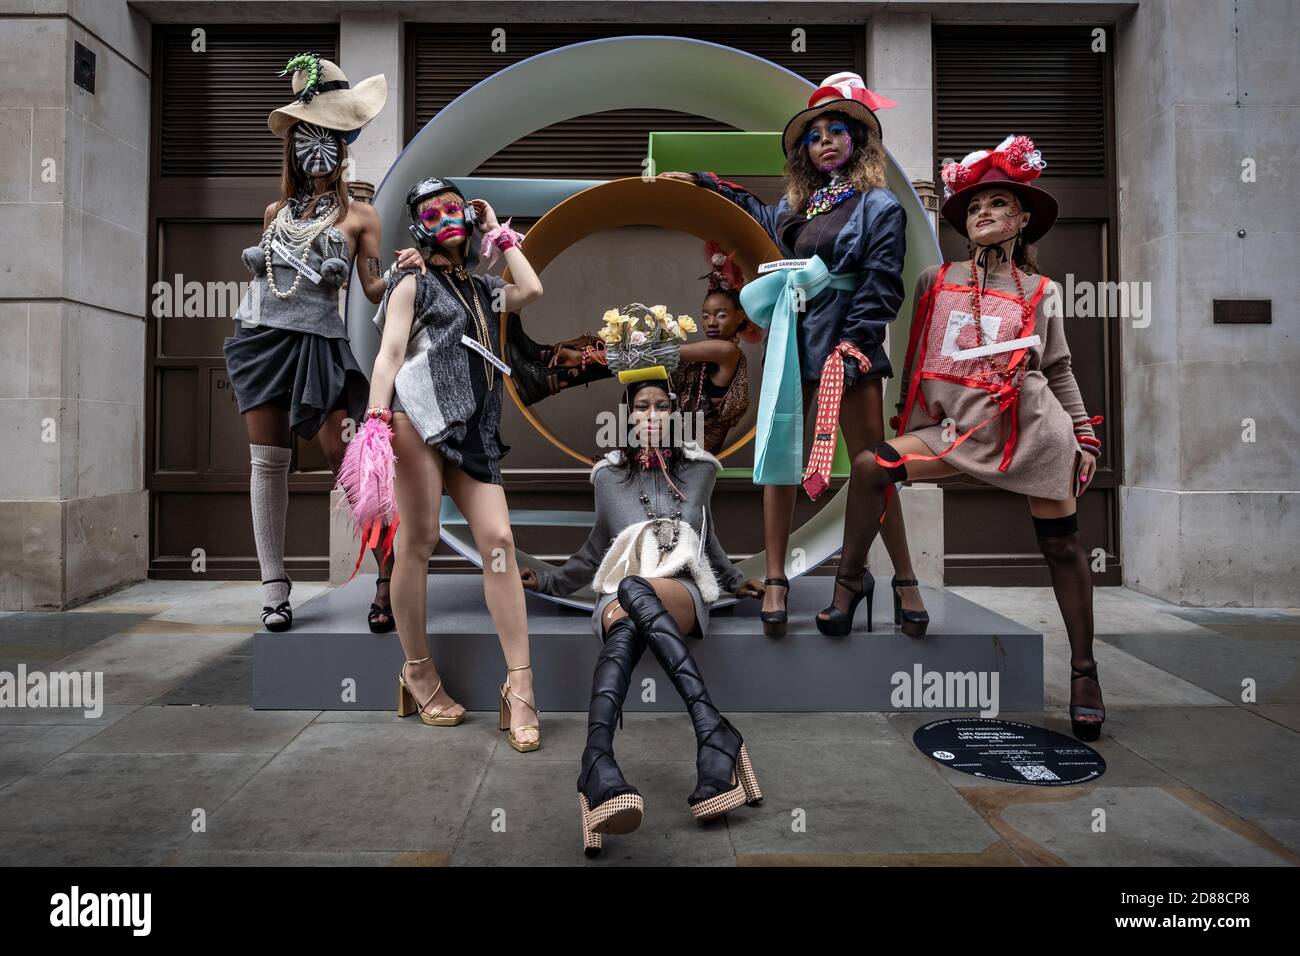 Los modelos participan en un colorido espectáculo de moda callejera cerca de Savile Row para el diseñador Pierre Garroudi. Londres, Reino Unido. Foto de stock